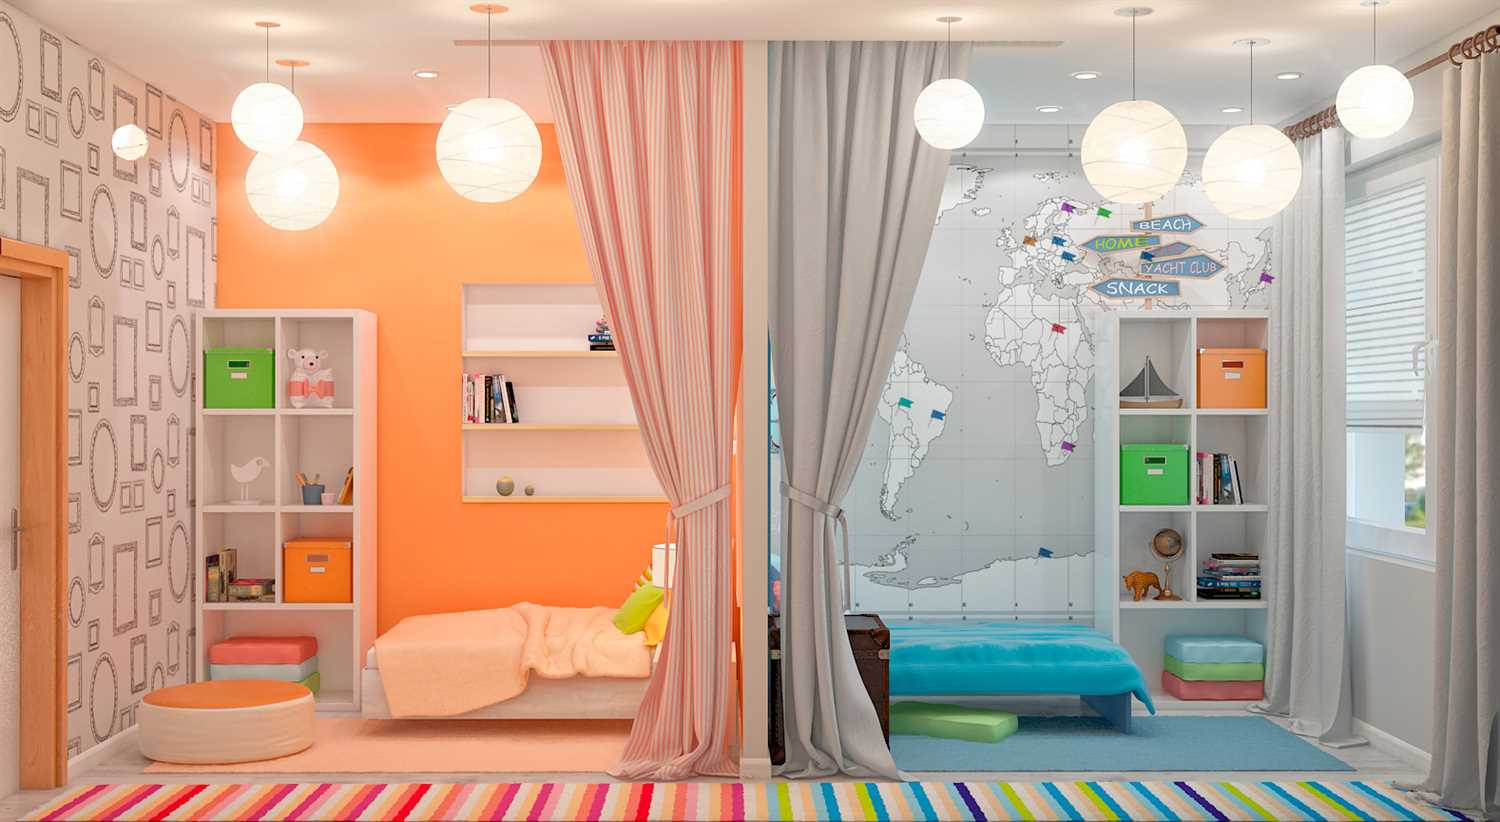 Дизайн детской комнаты: безопасность и креативность